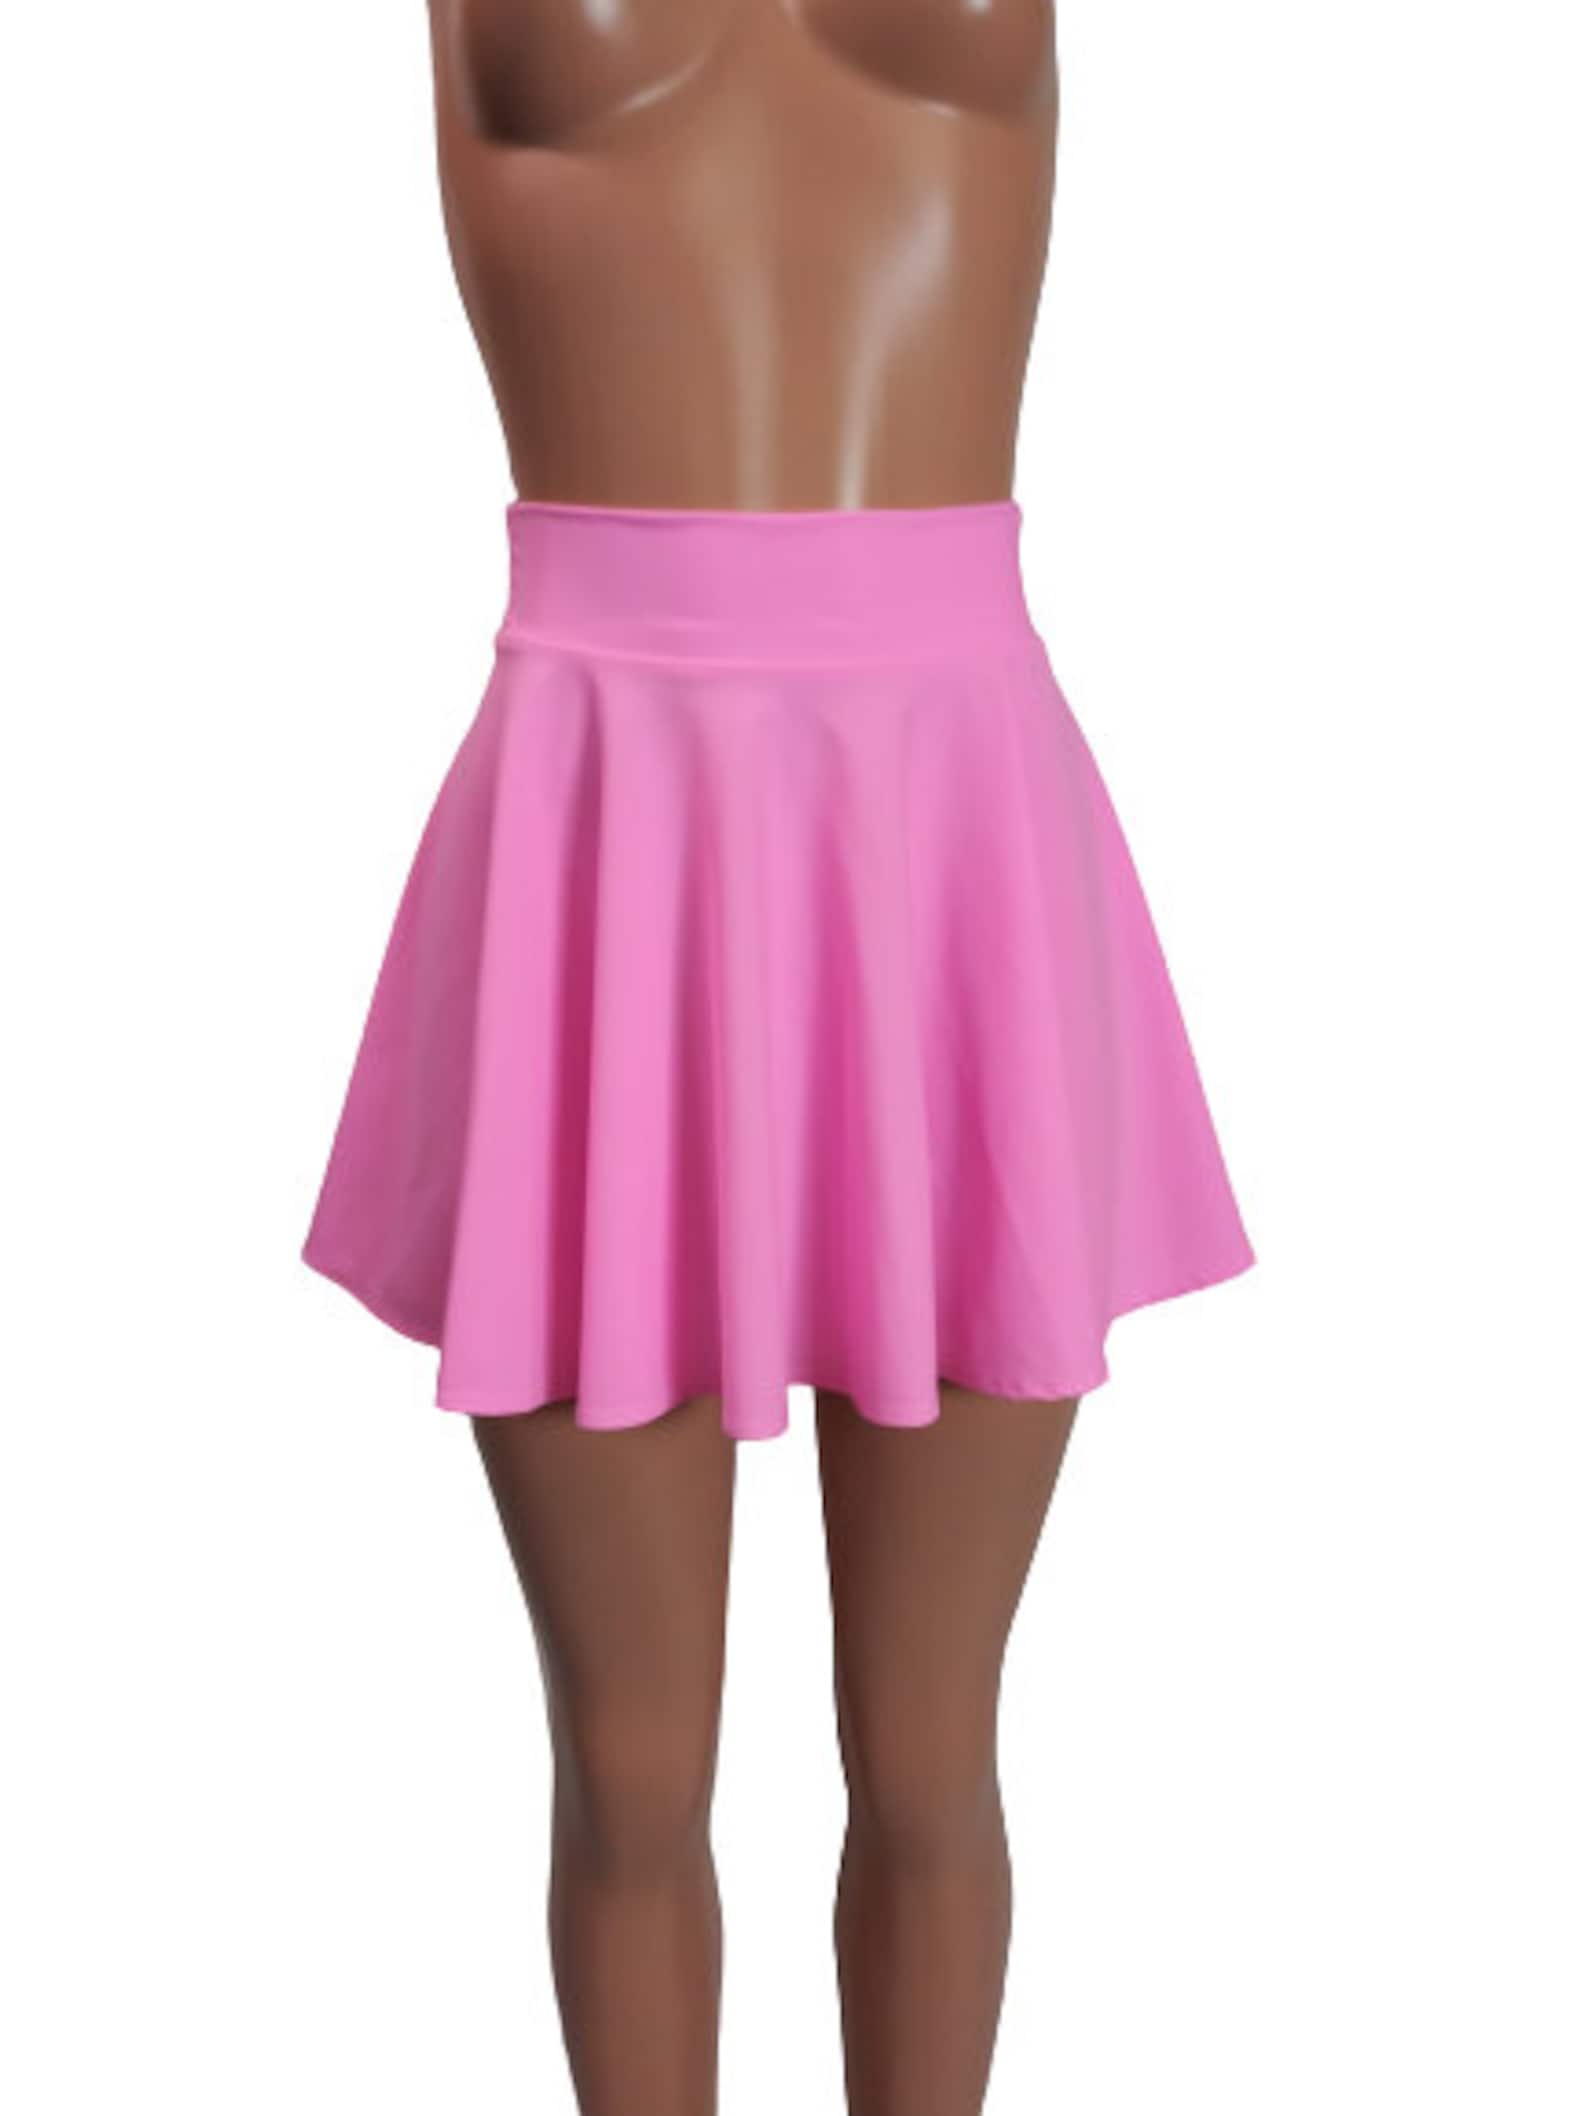 Light Pink Mini Skirt 15 13 12 10 - Etsy